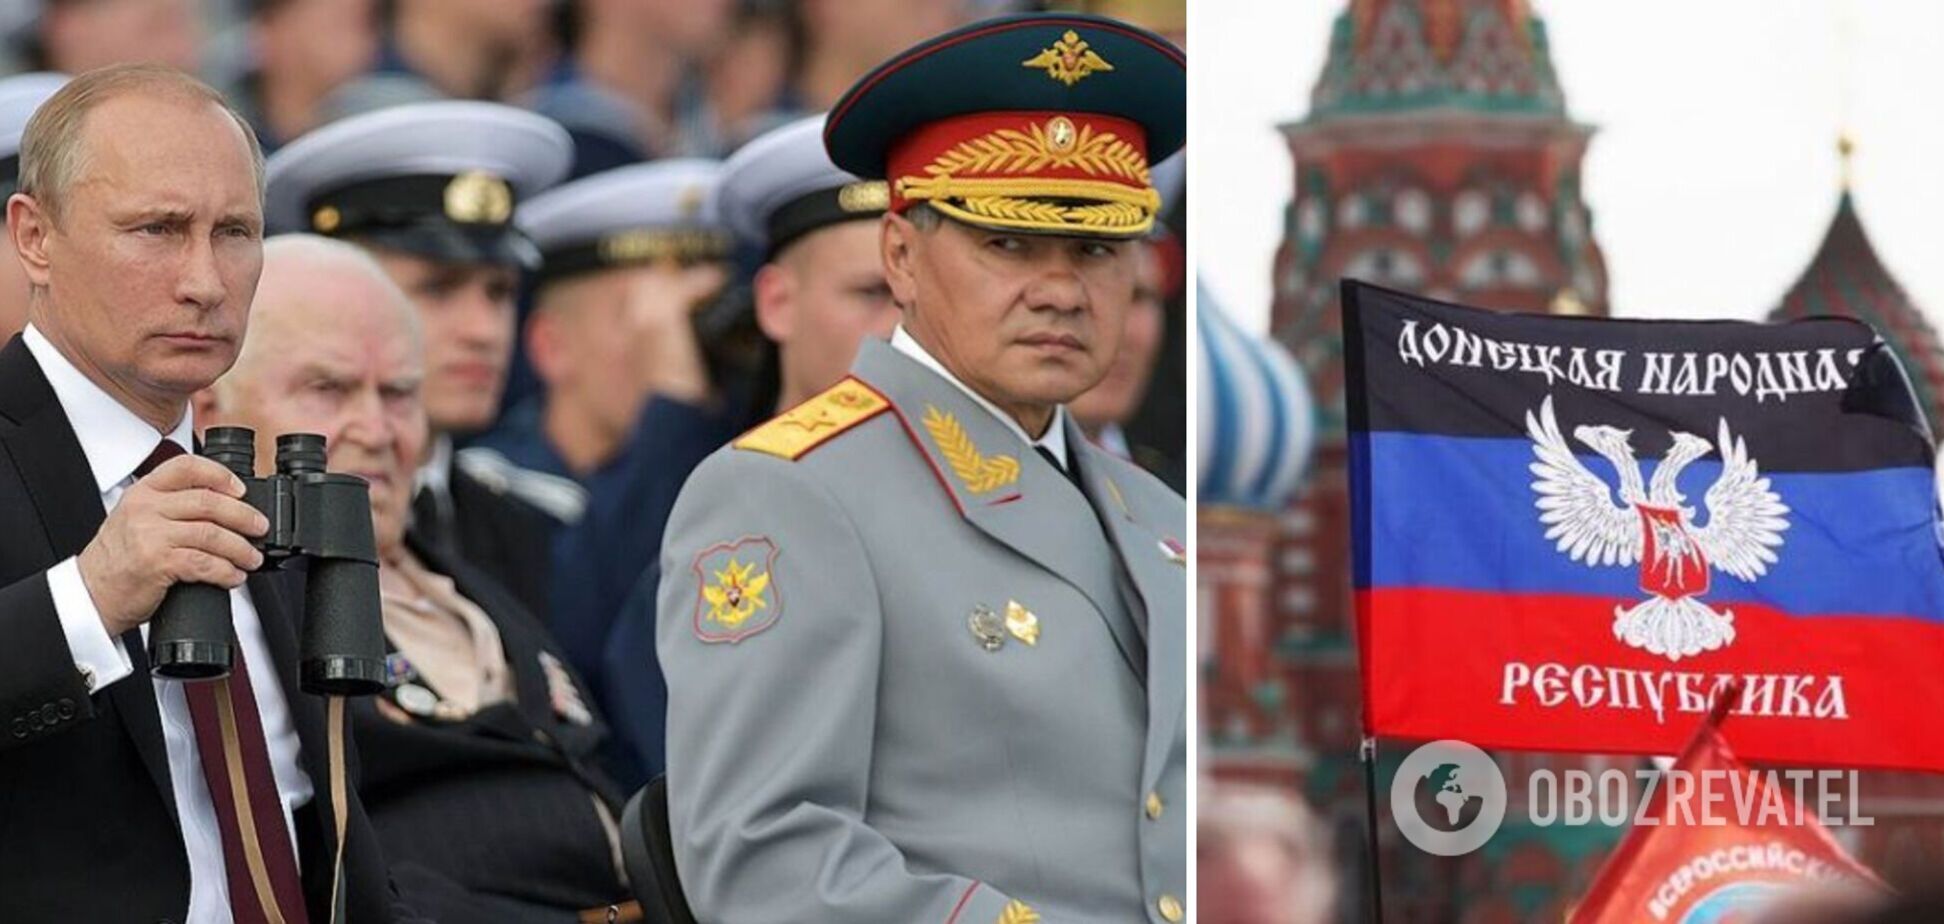 Застосувати хімзброю в ОРДЛО, посіяти хаос в Україні: Кремль готує привід для вторгнення